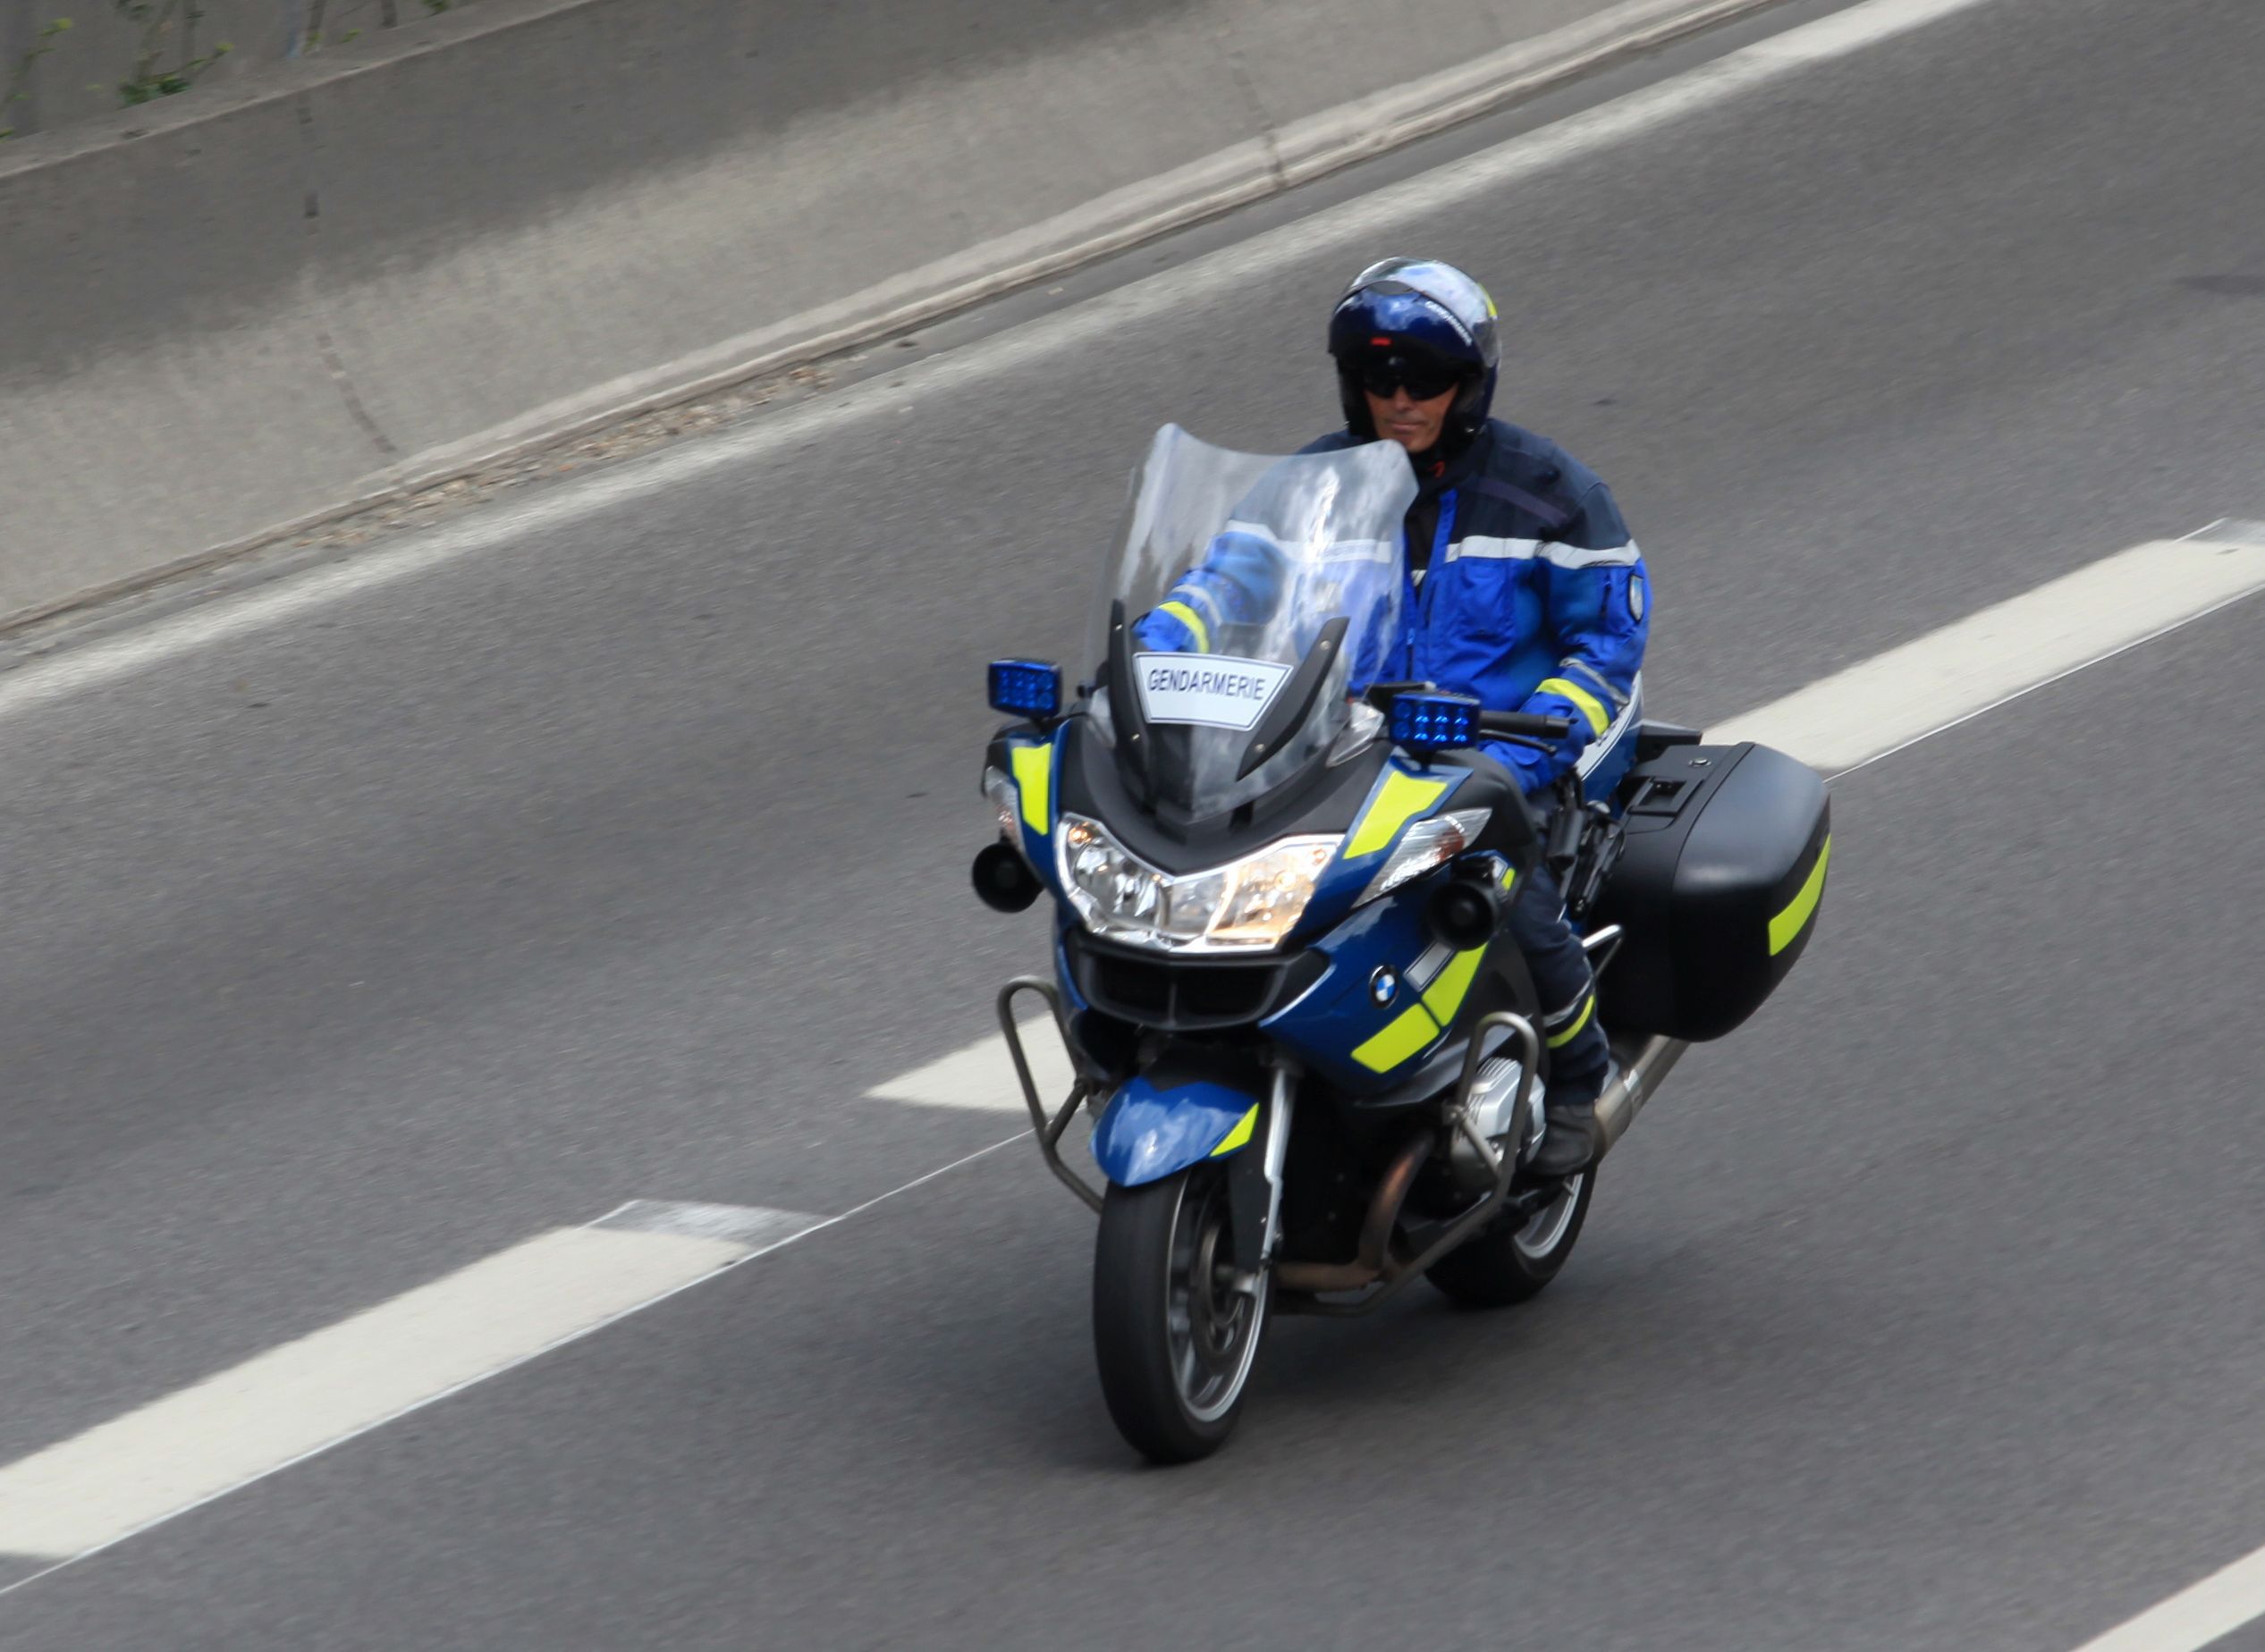 Les trois gendarmes étaient en pleine séance d’entraînement à moto sur une route départementale du Loiret. (Illustration) LP/Olivier Boitet